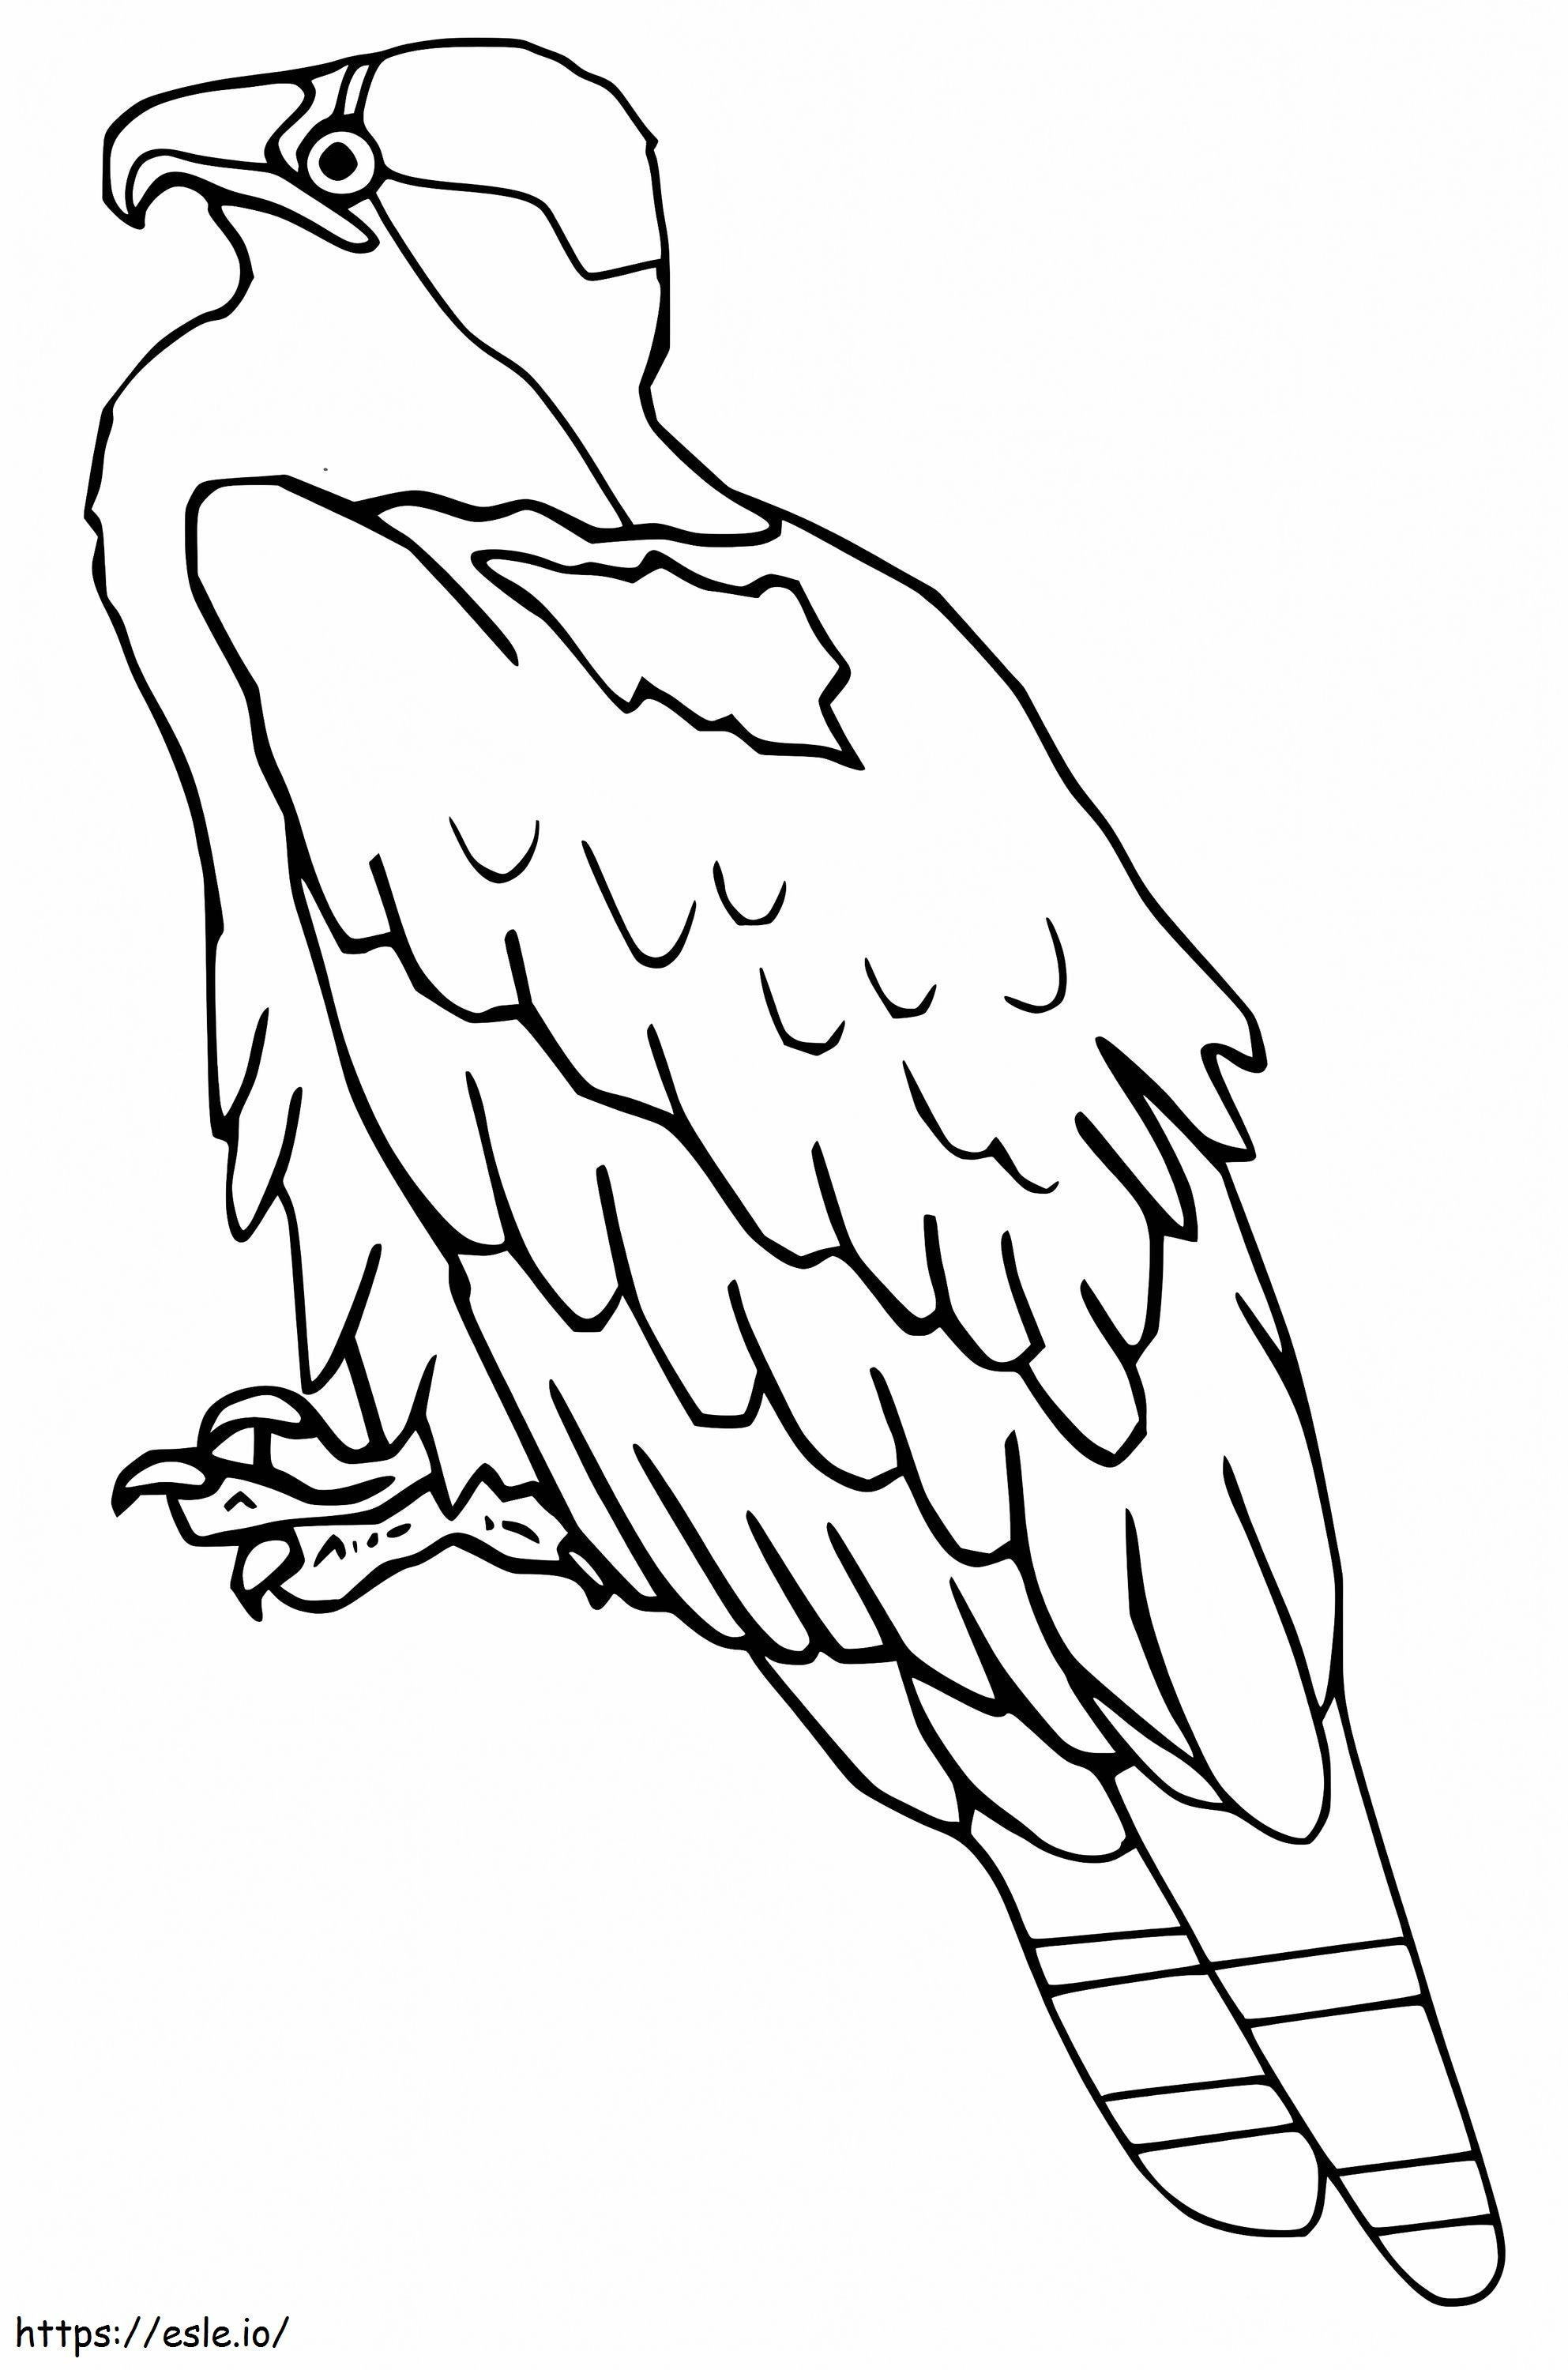 Águila pescadora normal para colorear